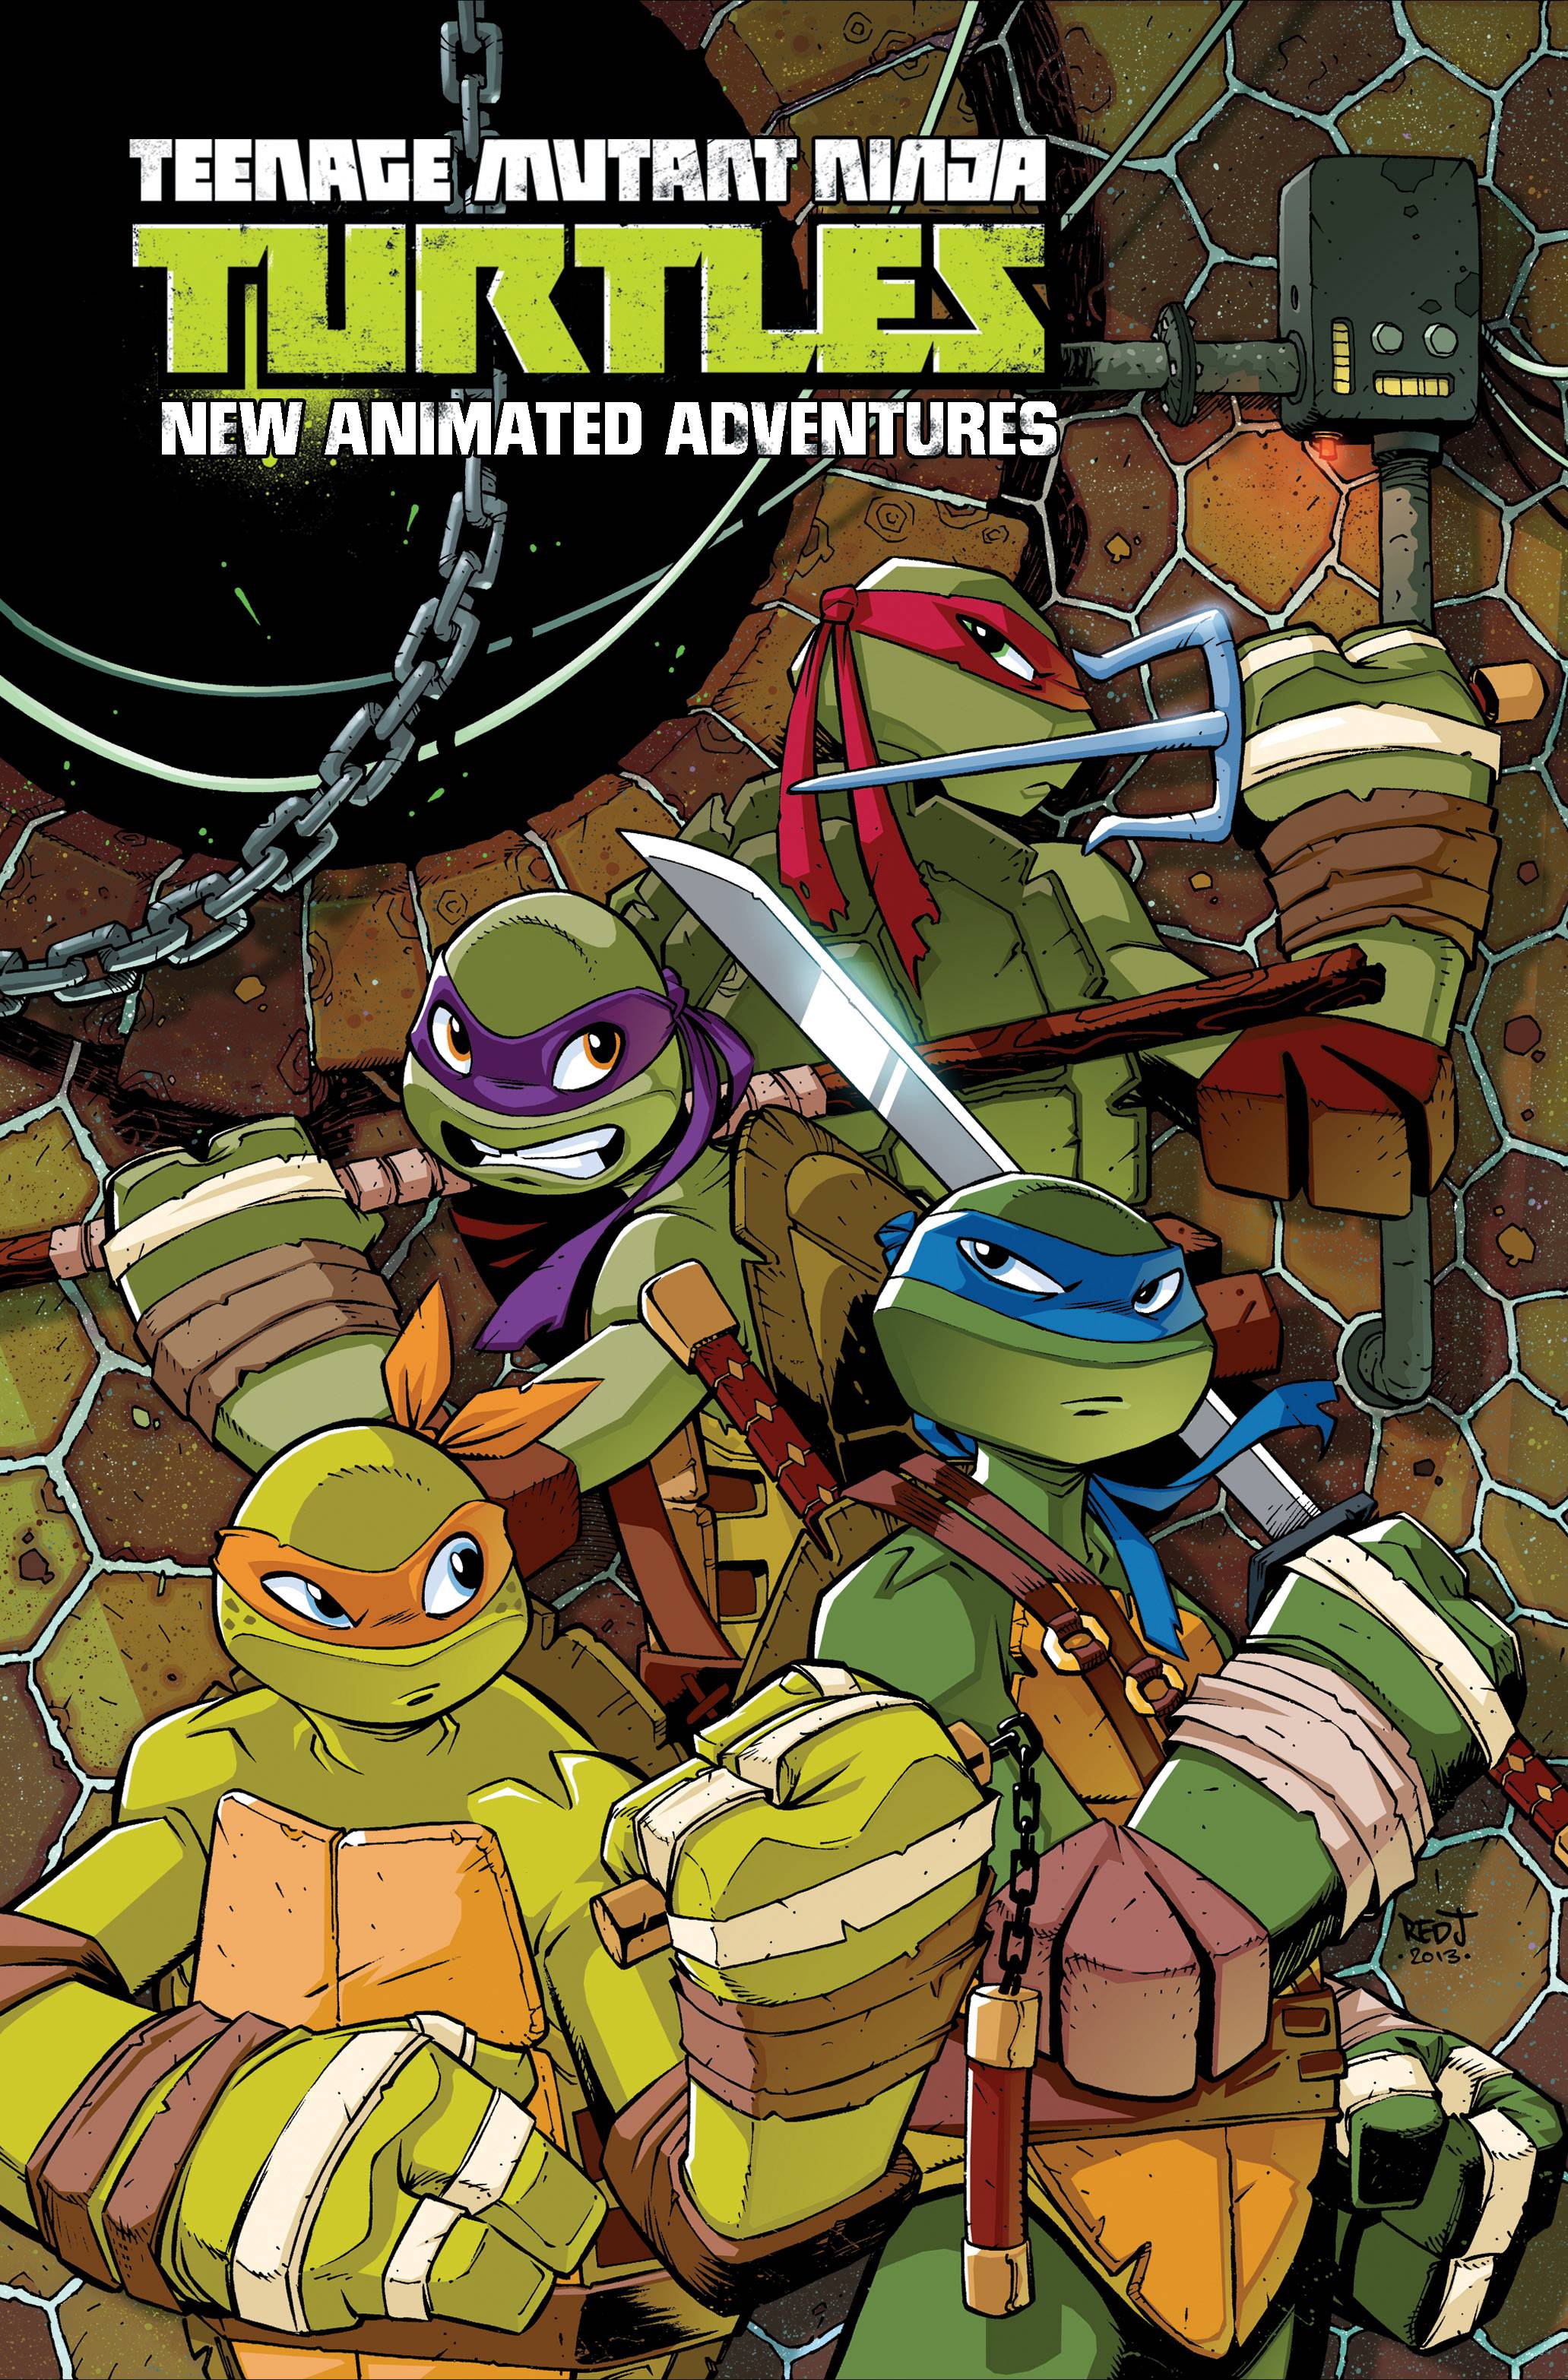 Teenage Mutant Ninja Turtles New Animated Adventure Omnibus Graphic Novel Volume 1